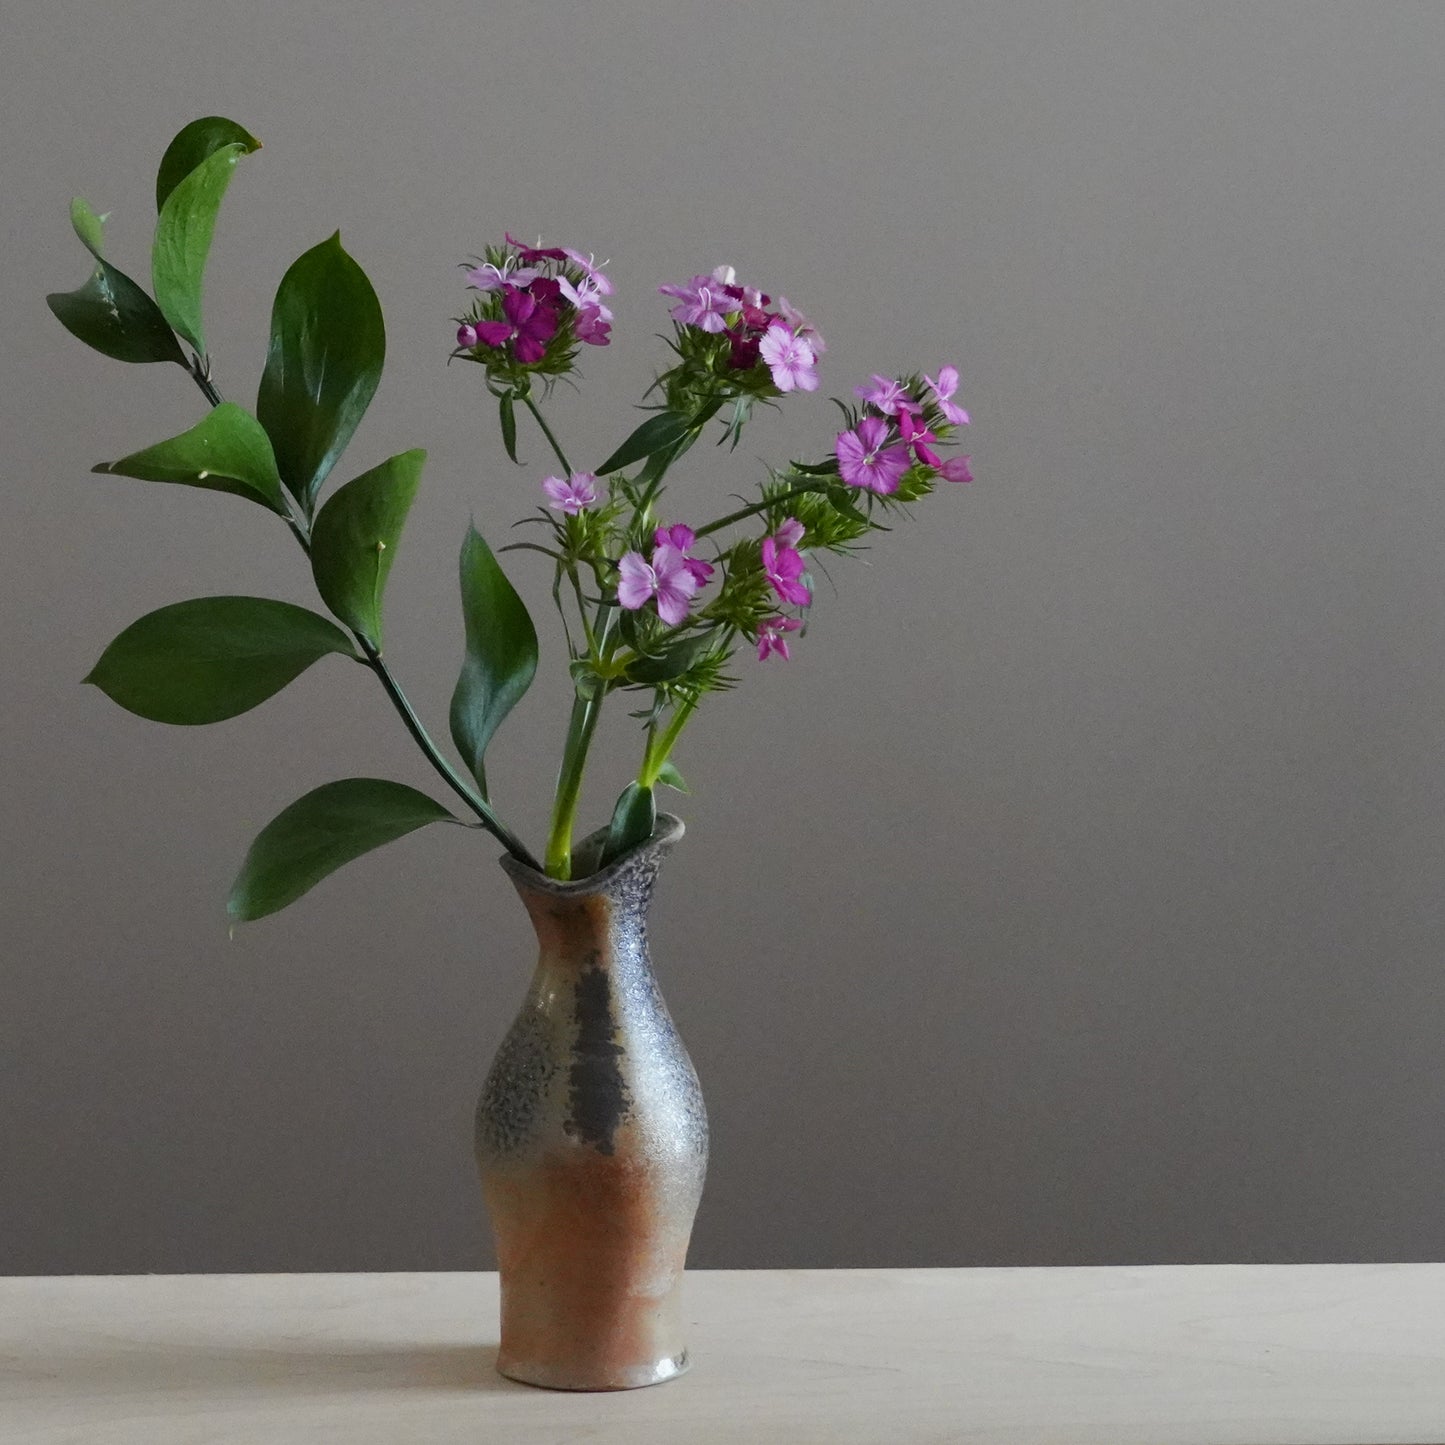 Reduction cooled bud vase